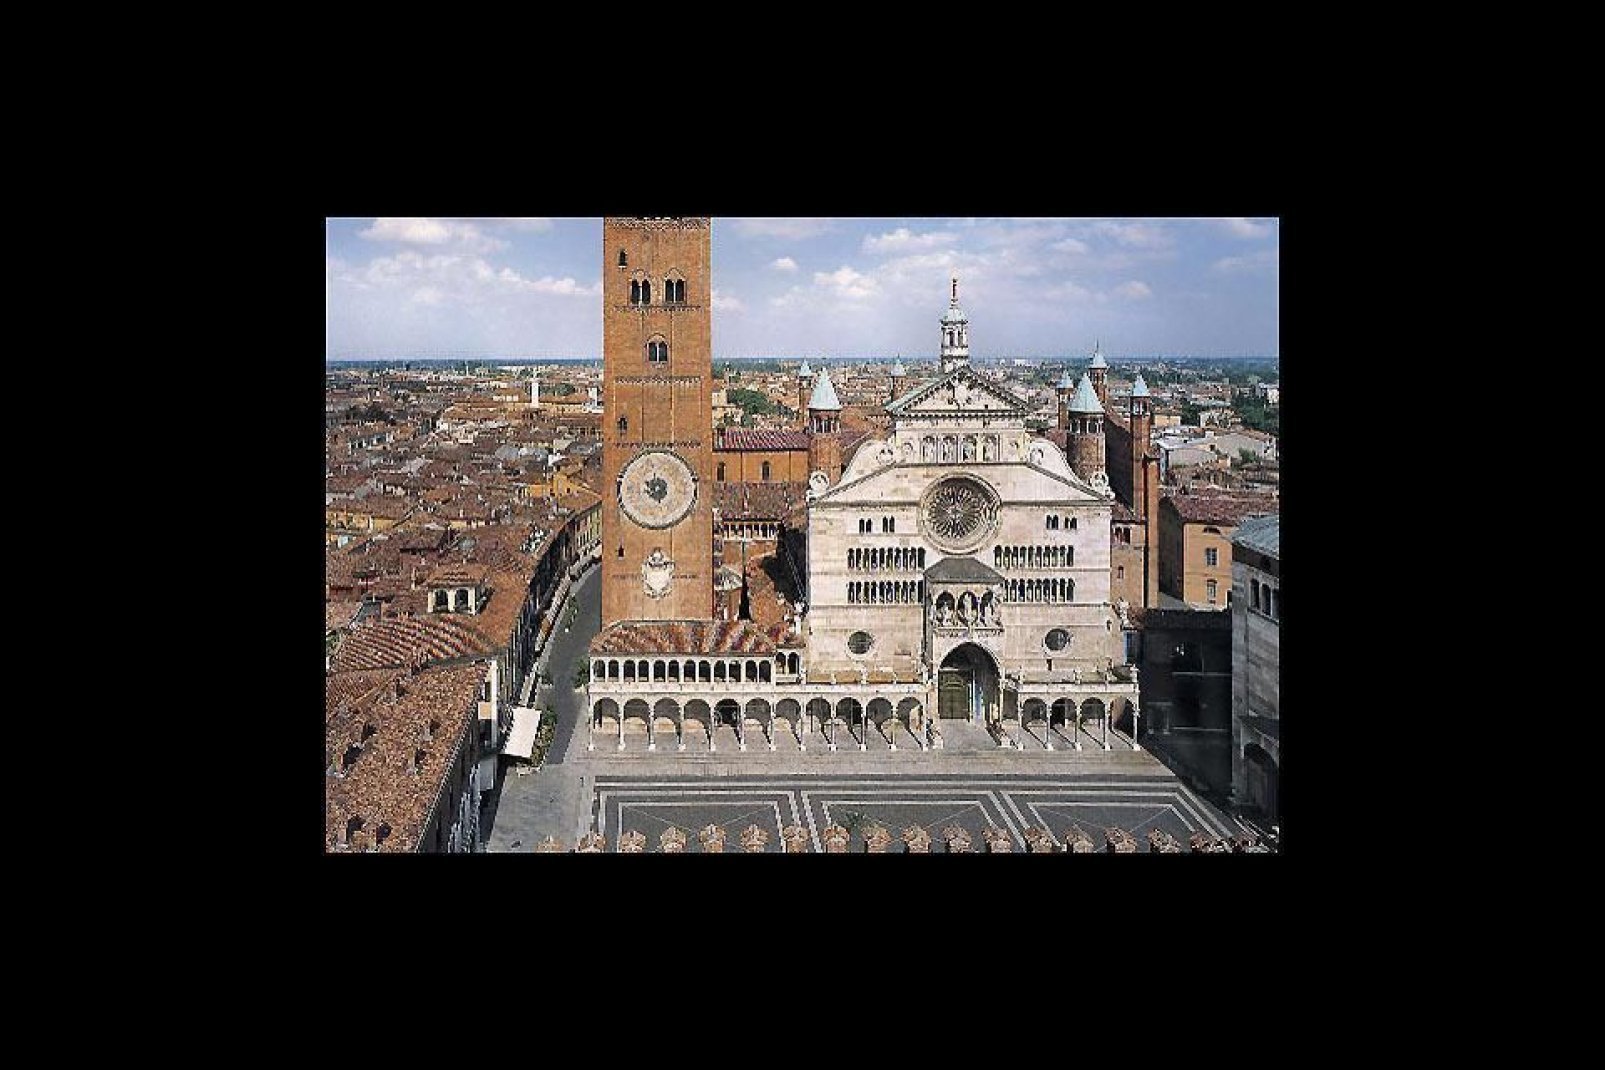 La catedral de Cremona, dedicada a la Asunción, es un amplio templo romano adaptado con elementos góticos, renacentistas y barrocos.